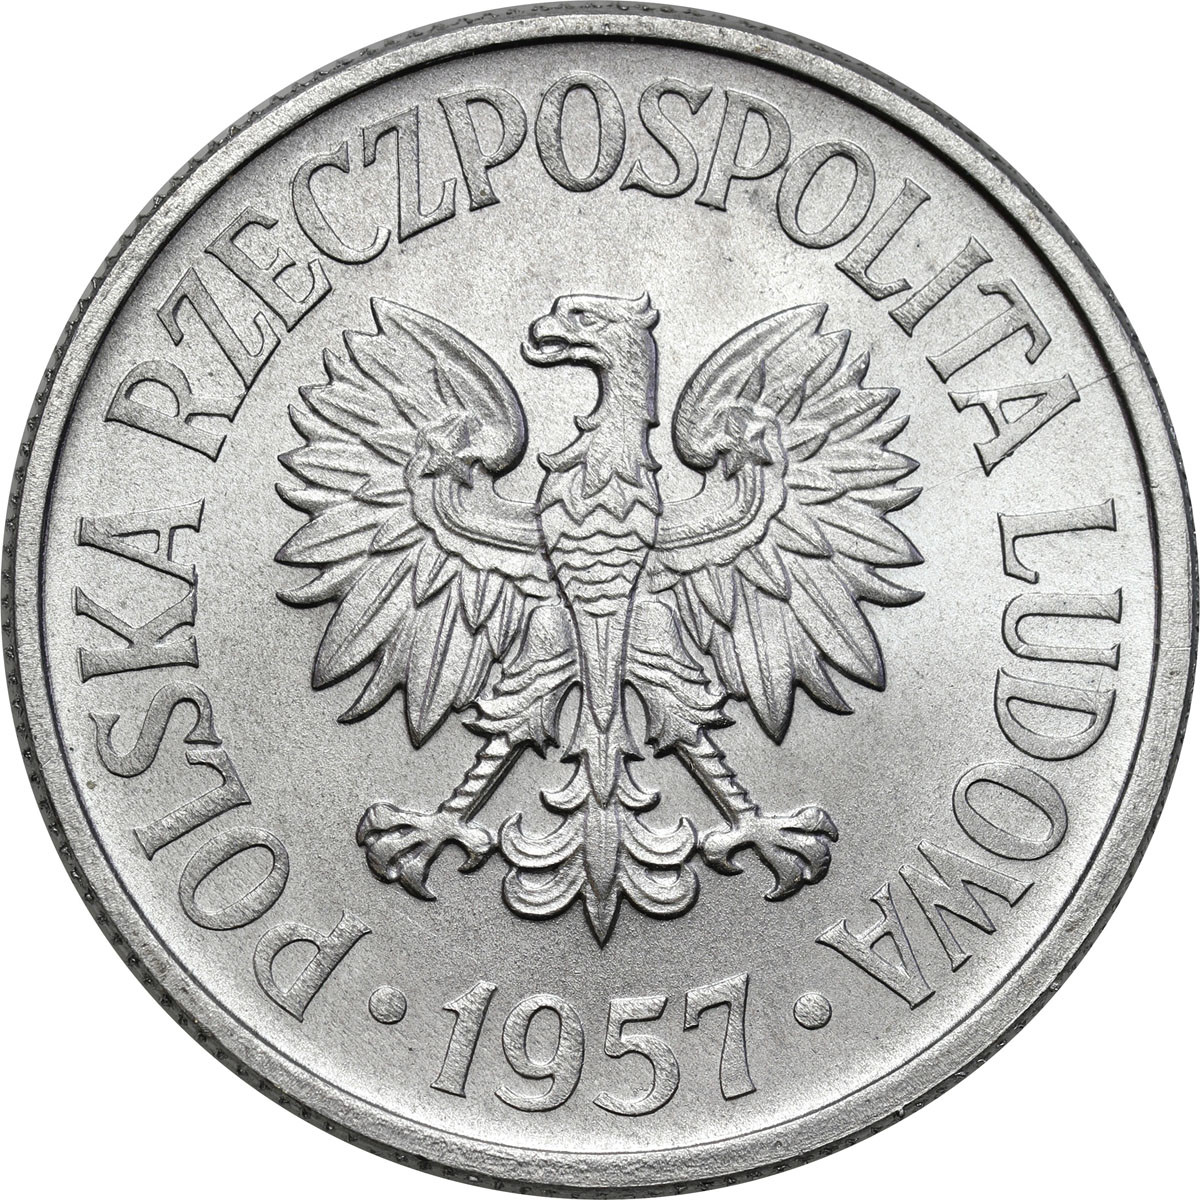 PRL. 50 groszy 1957 aluminium – RZADKI ROCZNIK